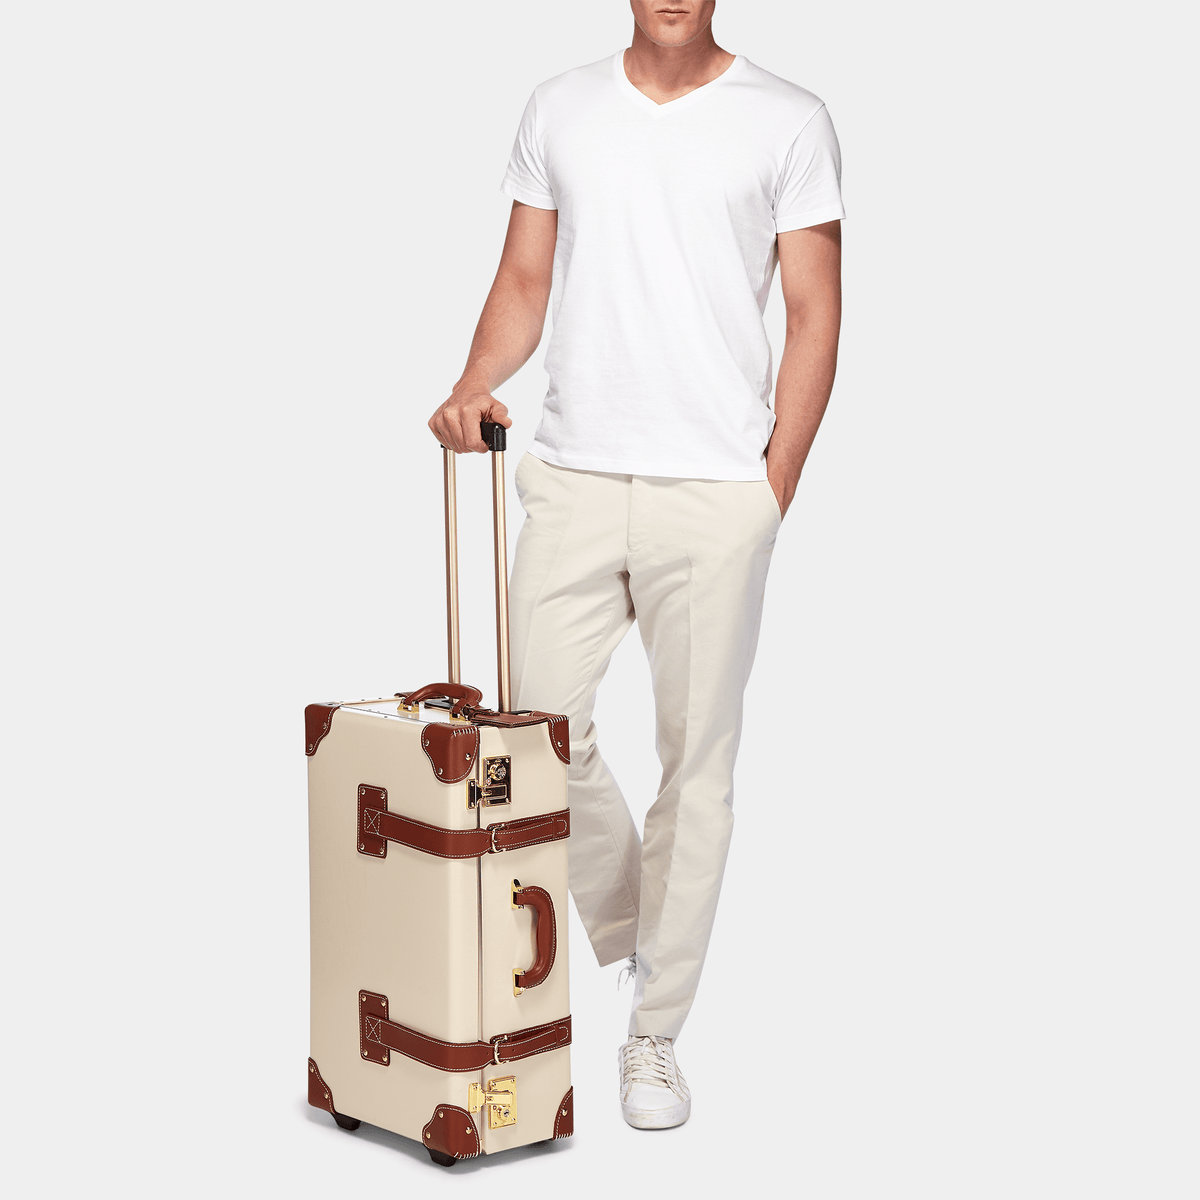 Louis Vuitton Nylon Travel Luggage for sale